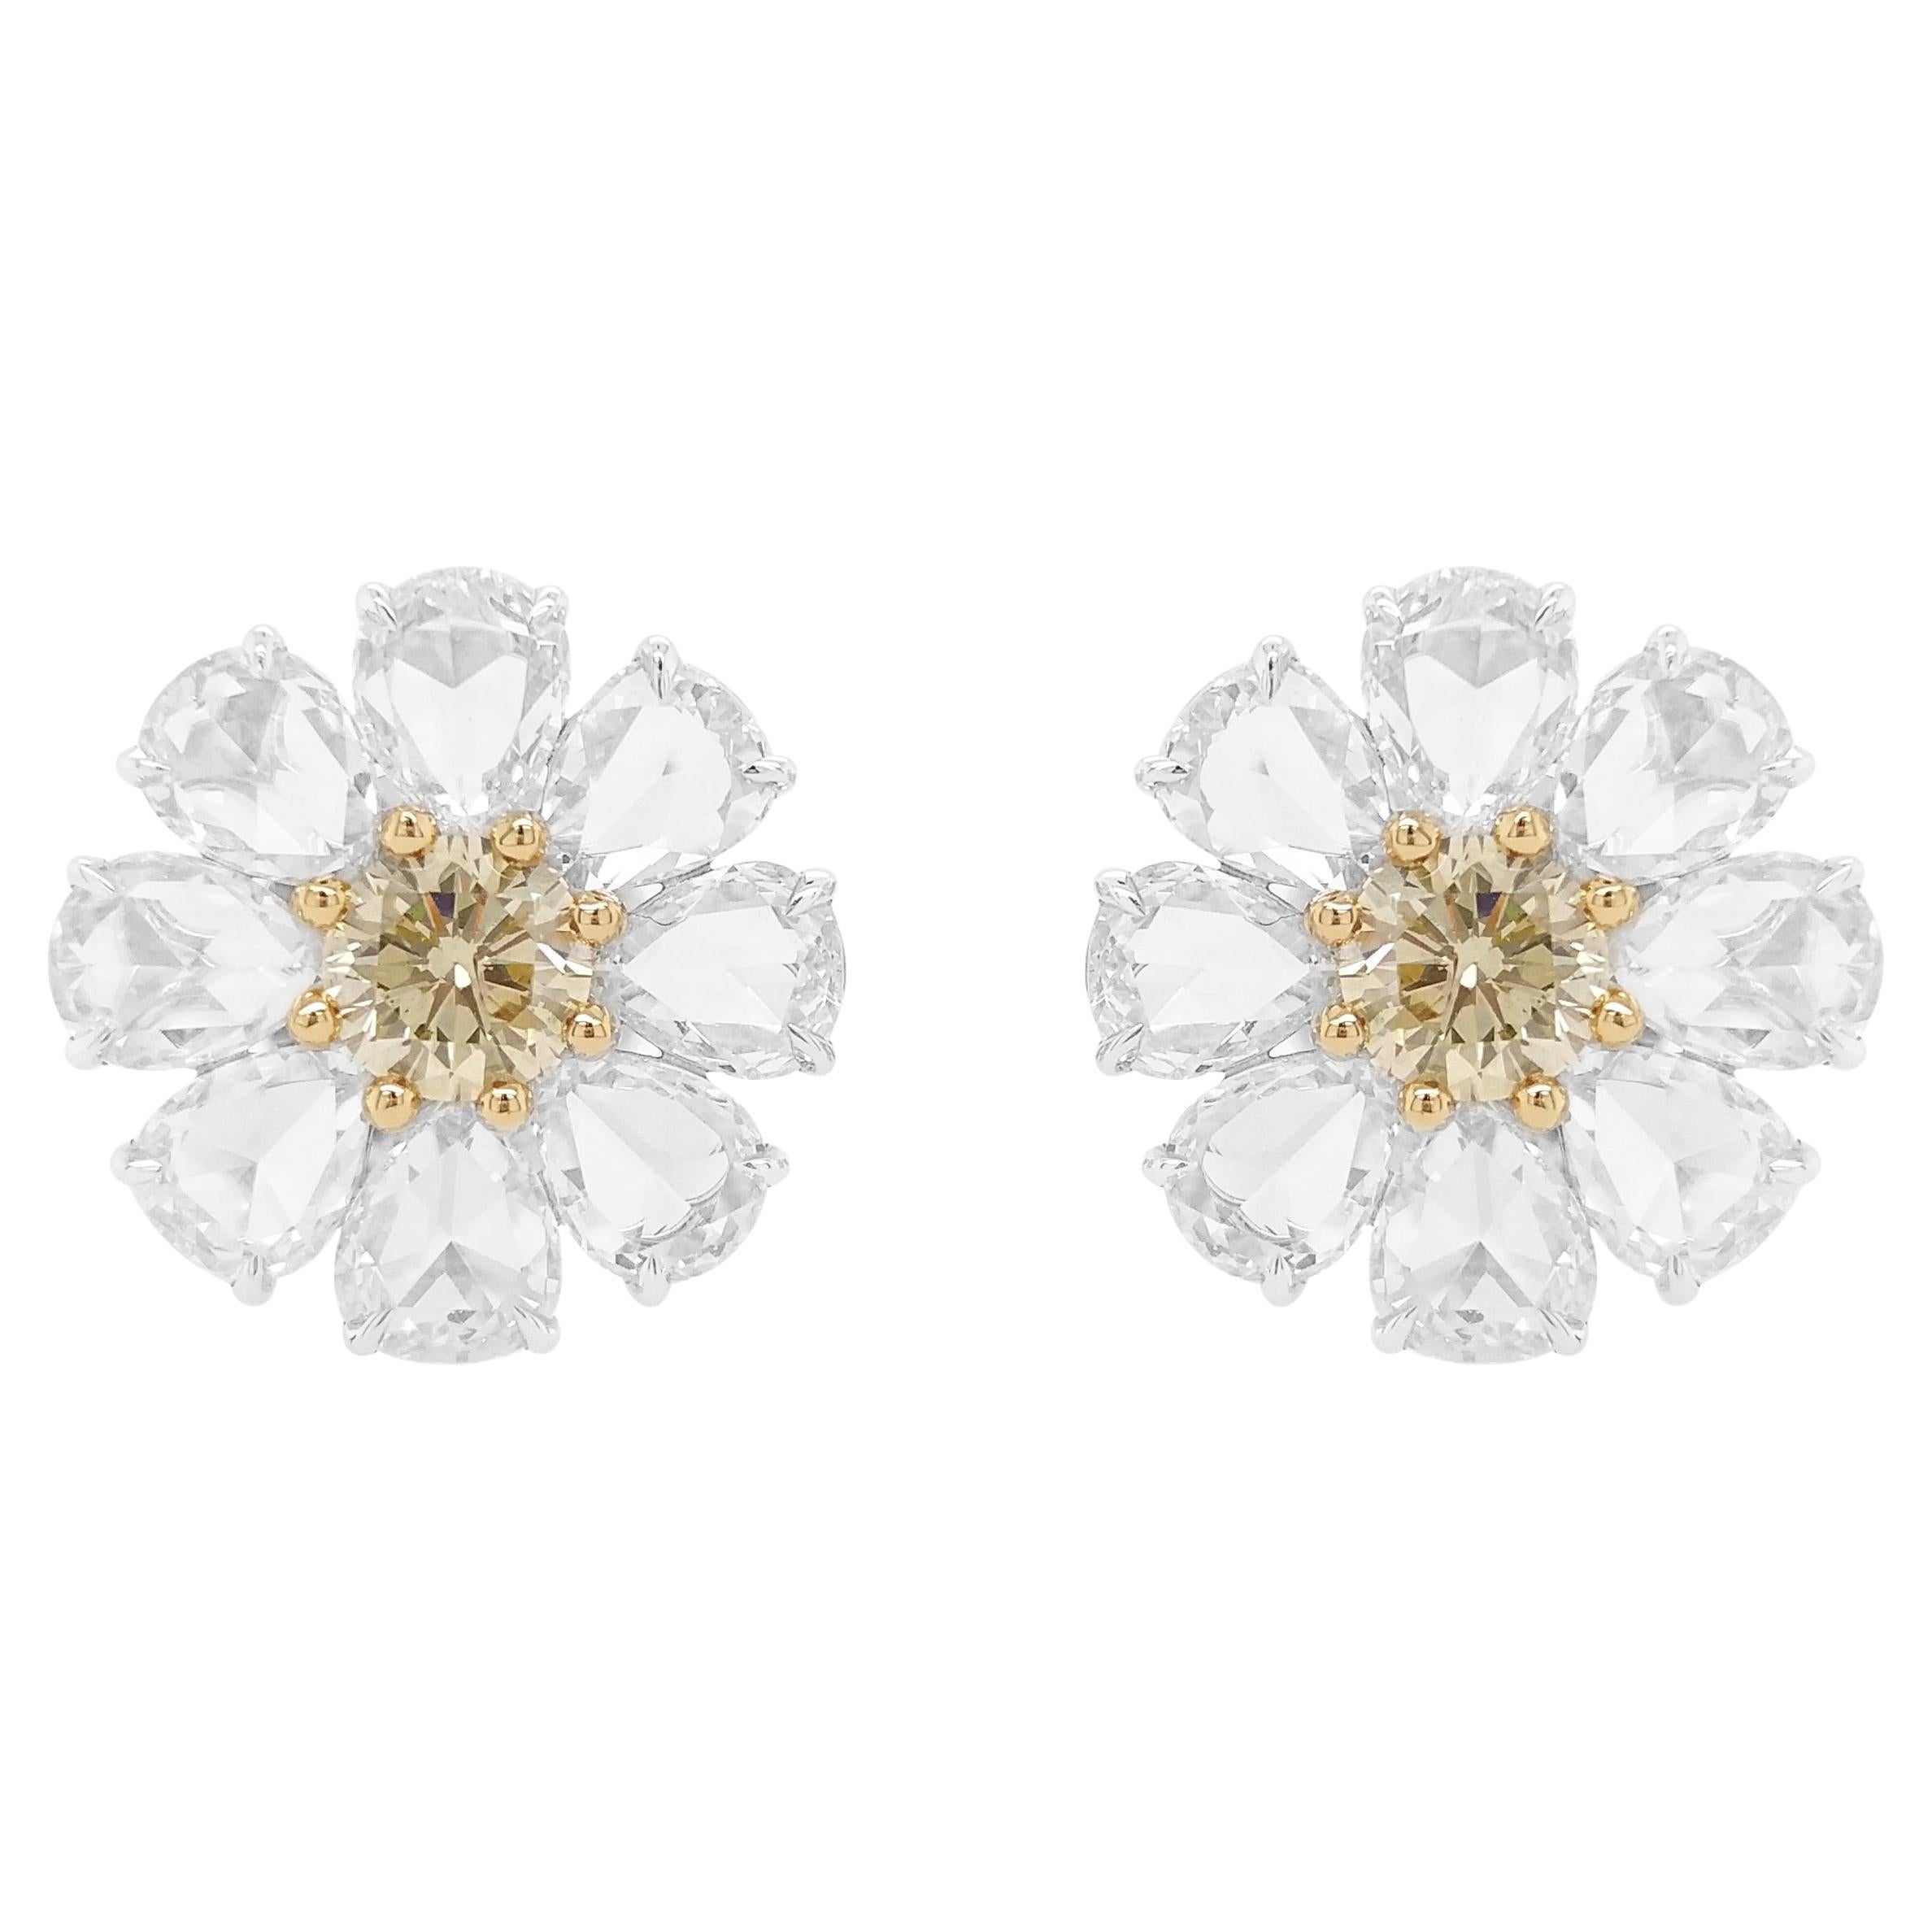 IGI-zertifizierte florale Ohrringe aus 18 Karat Gold mit gelben Fancy-Diamanten